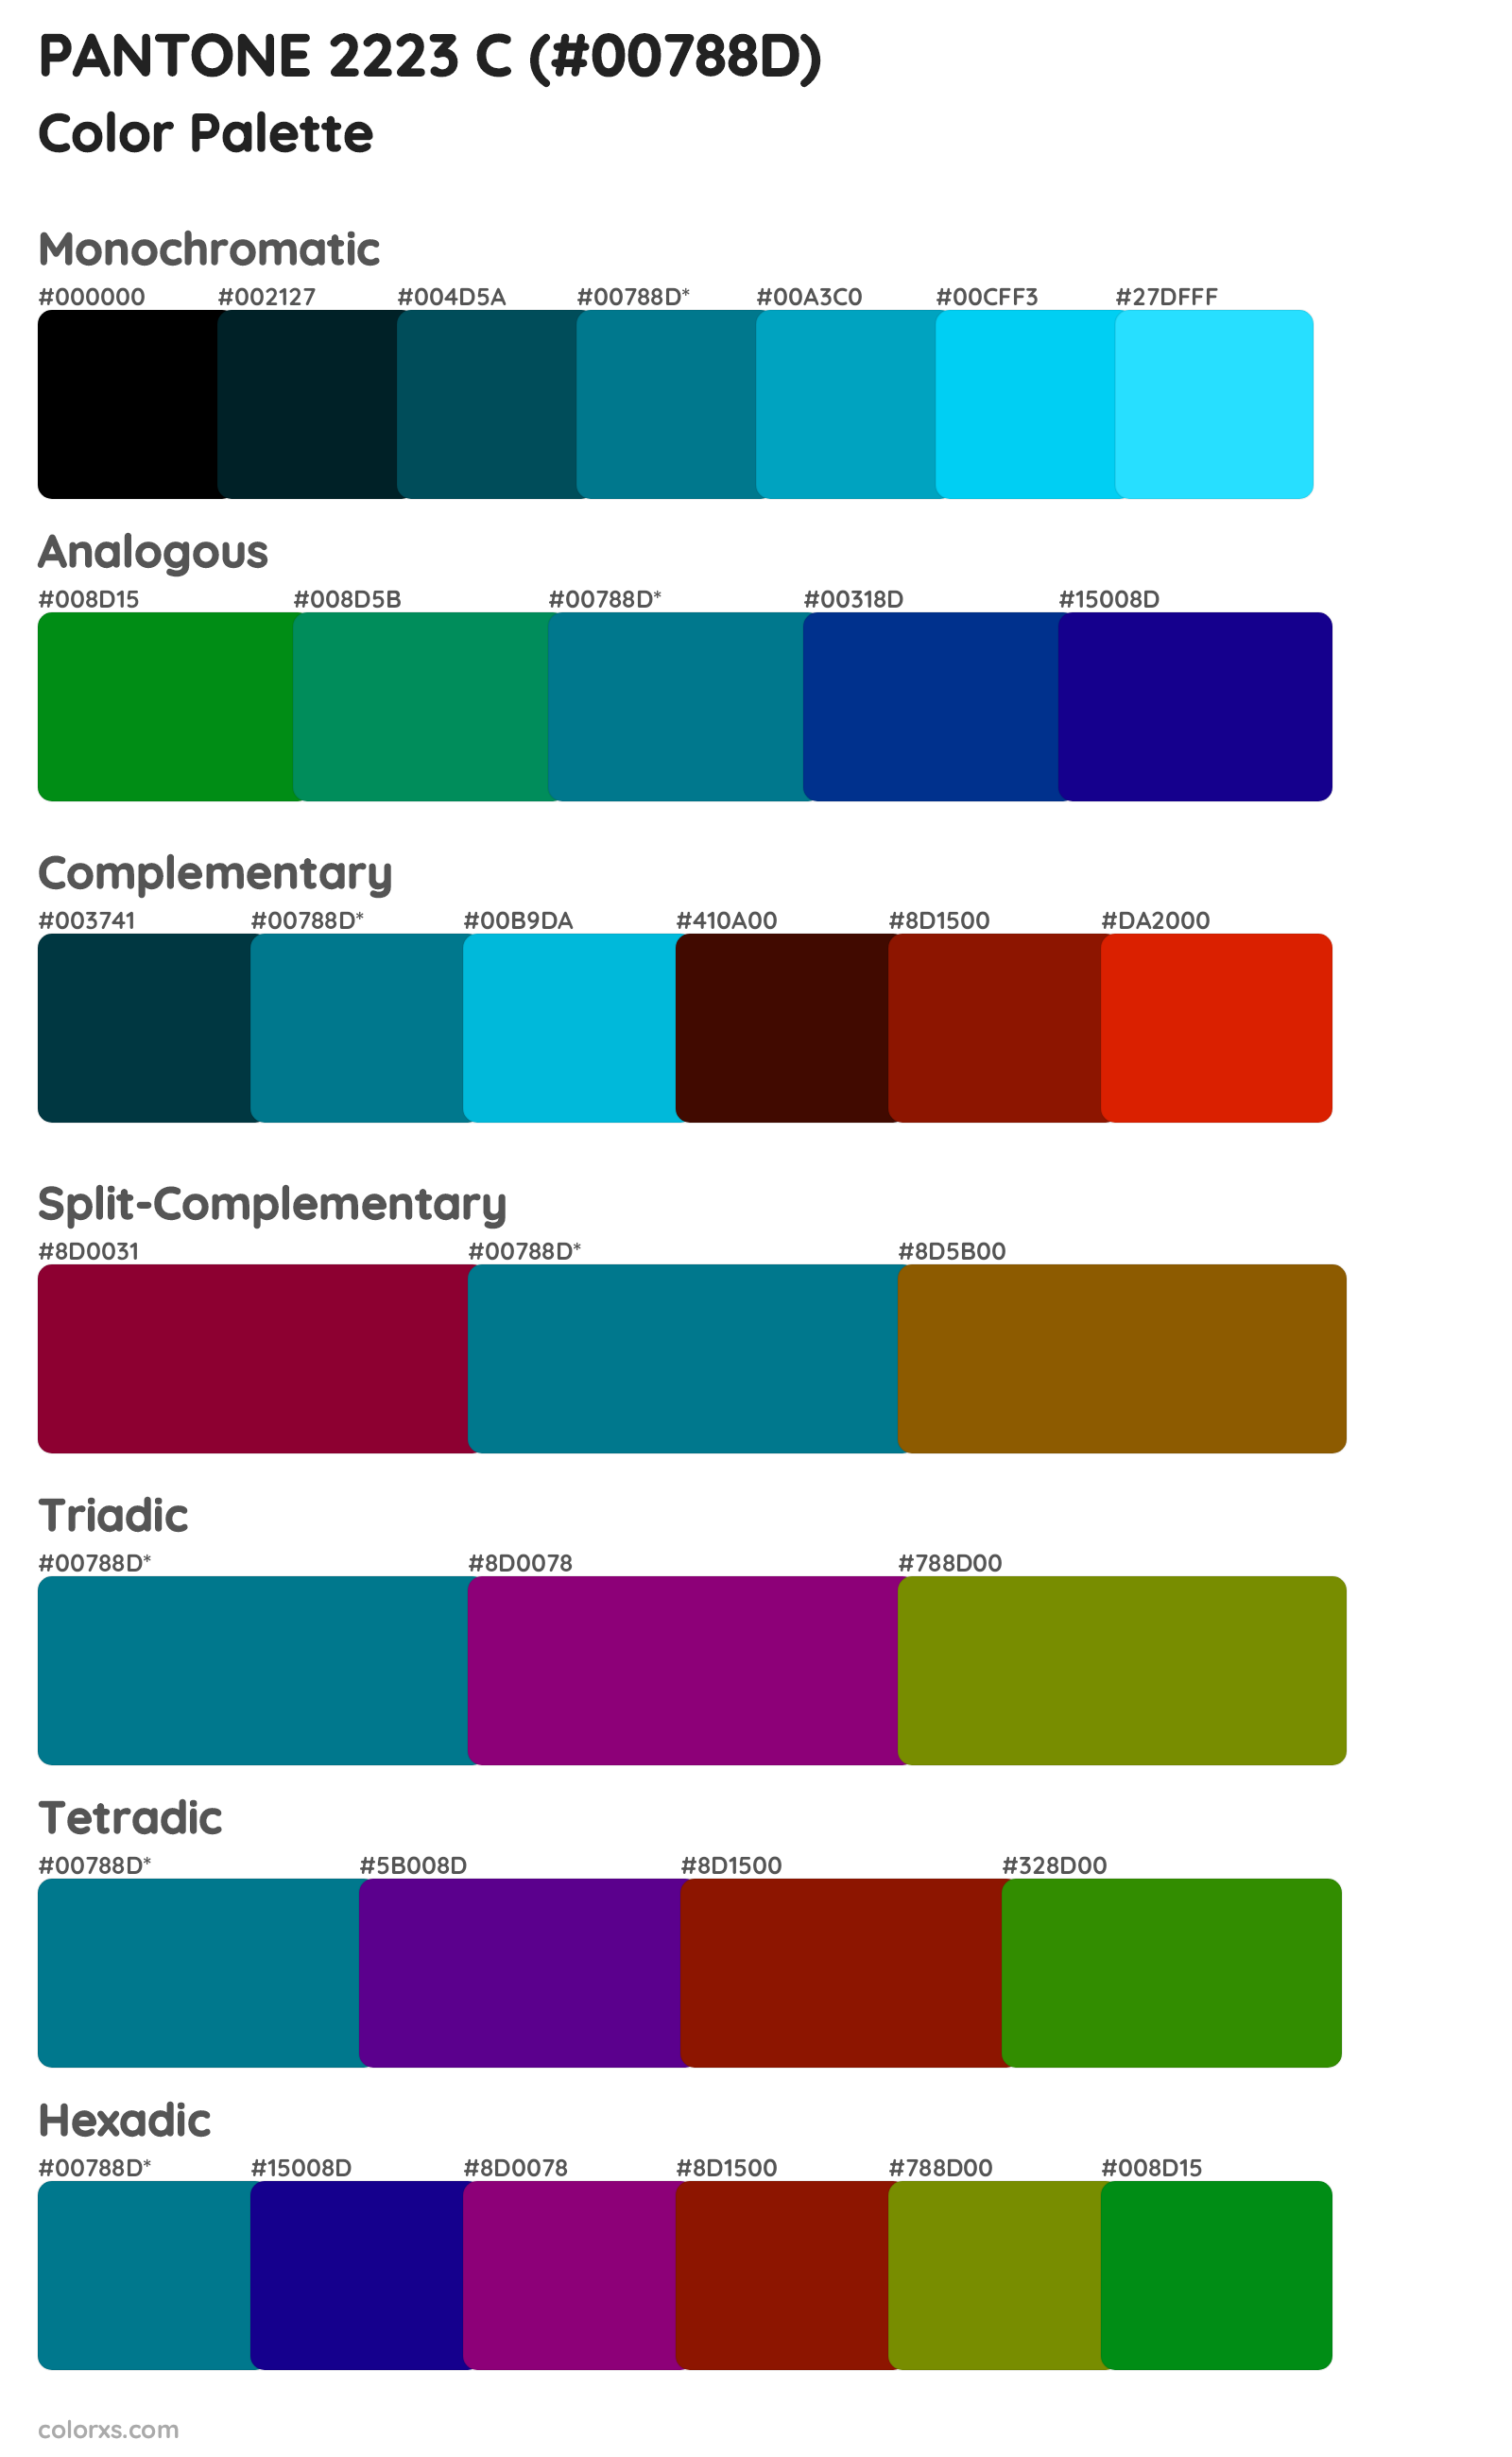 PANTONE 2223 C Color Scheme Palettes